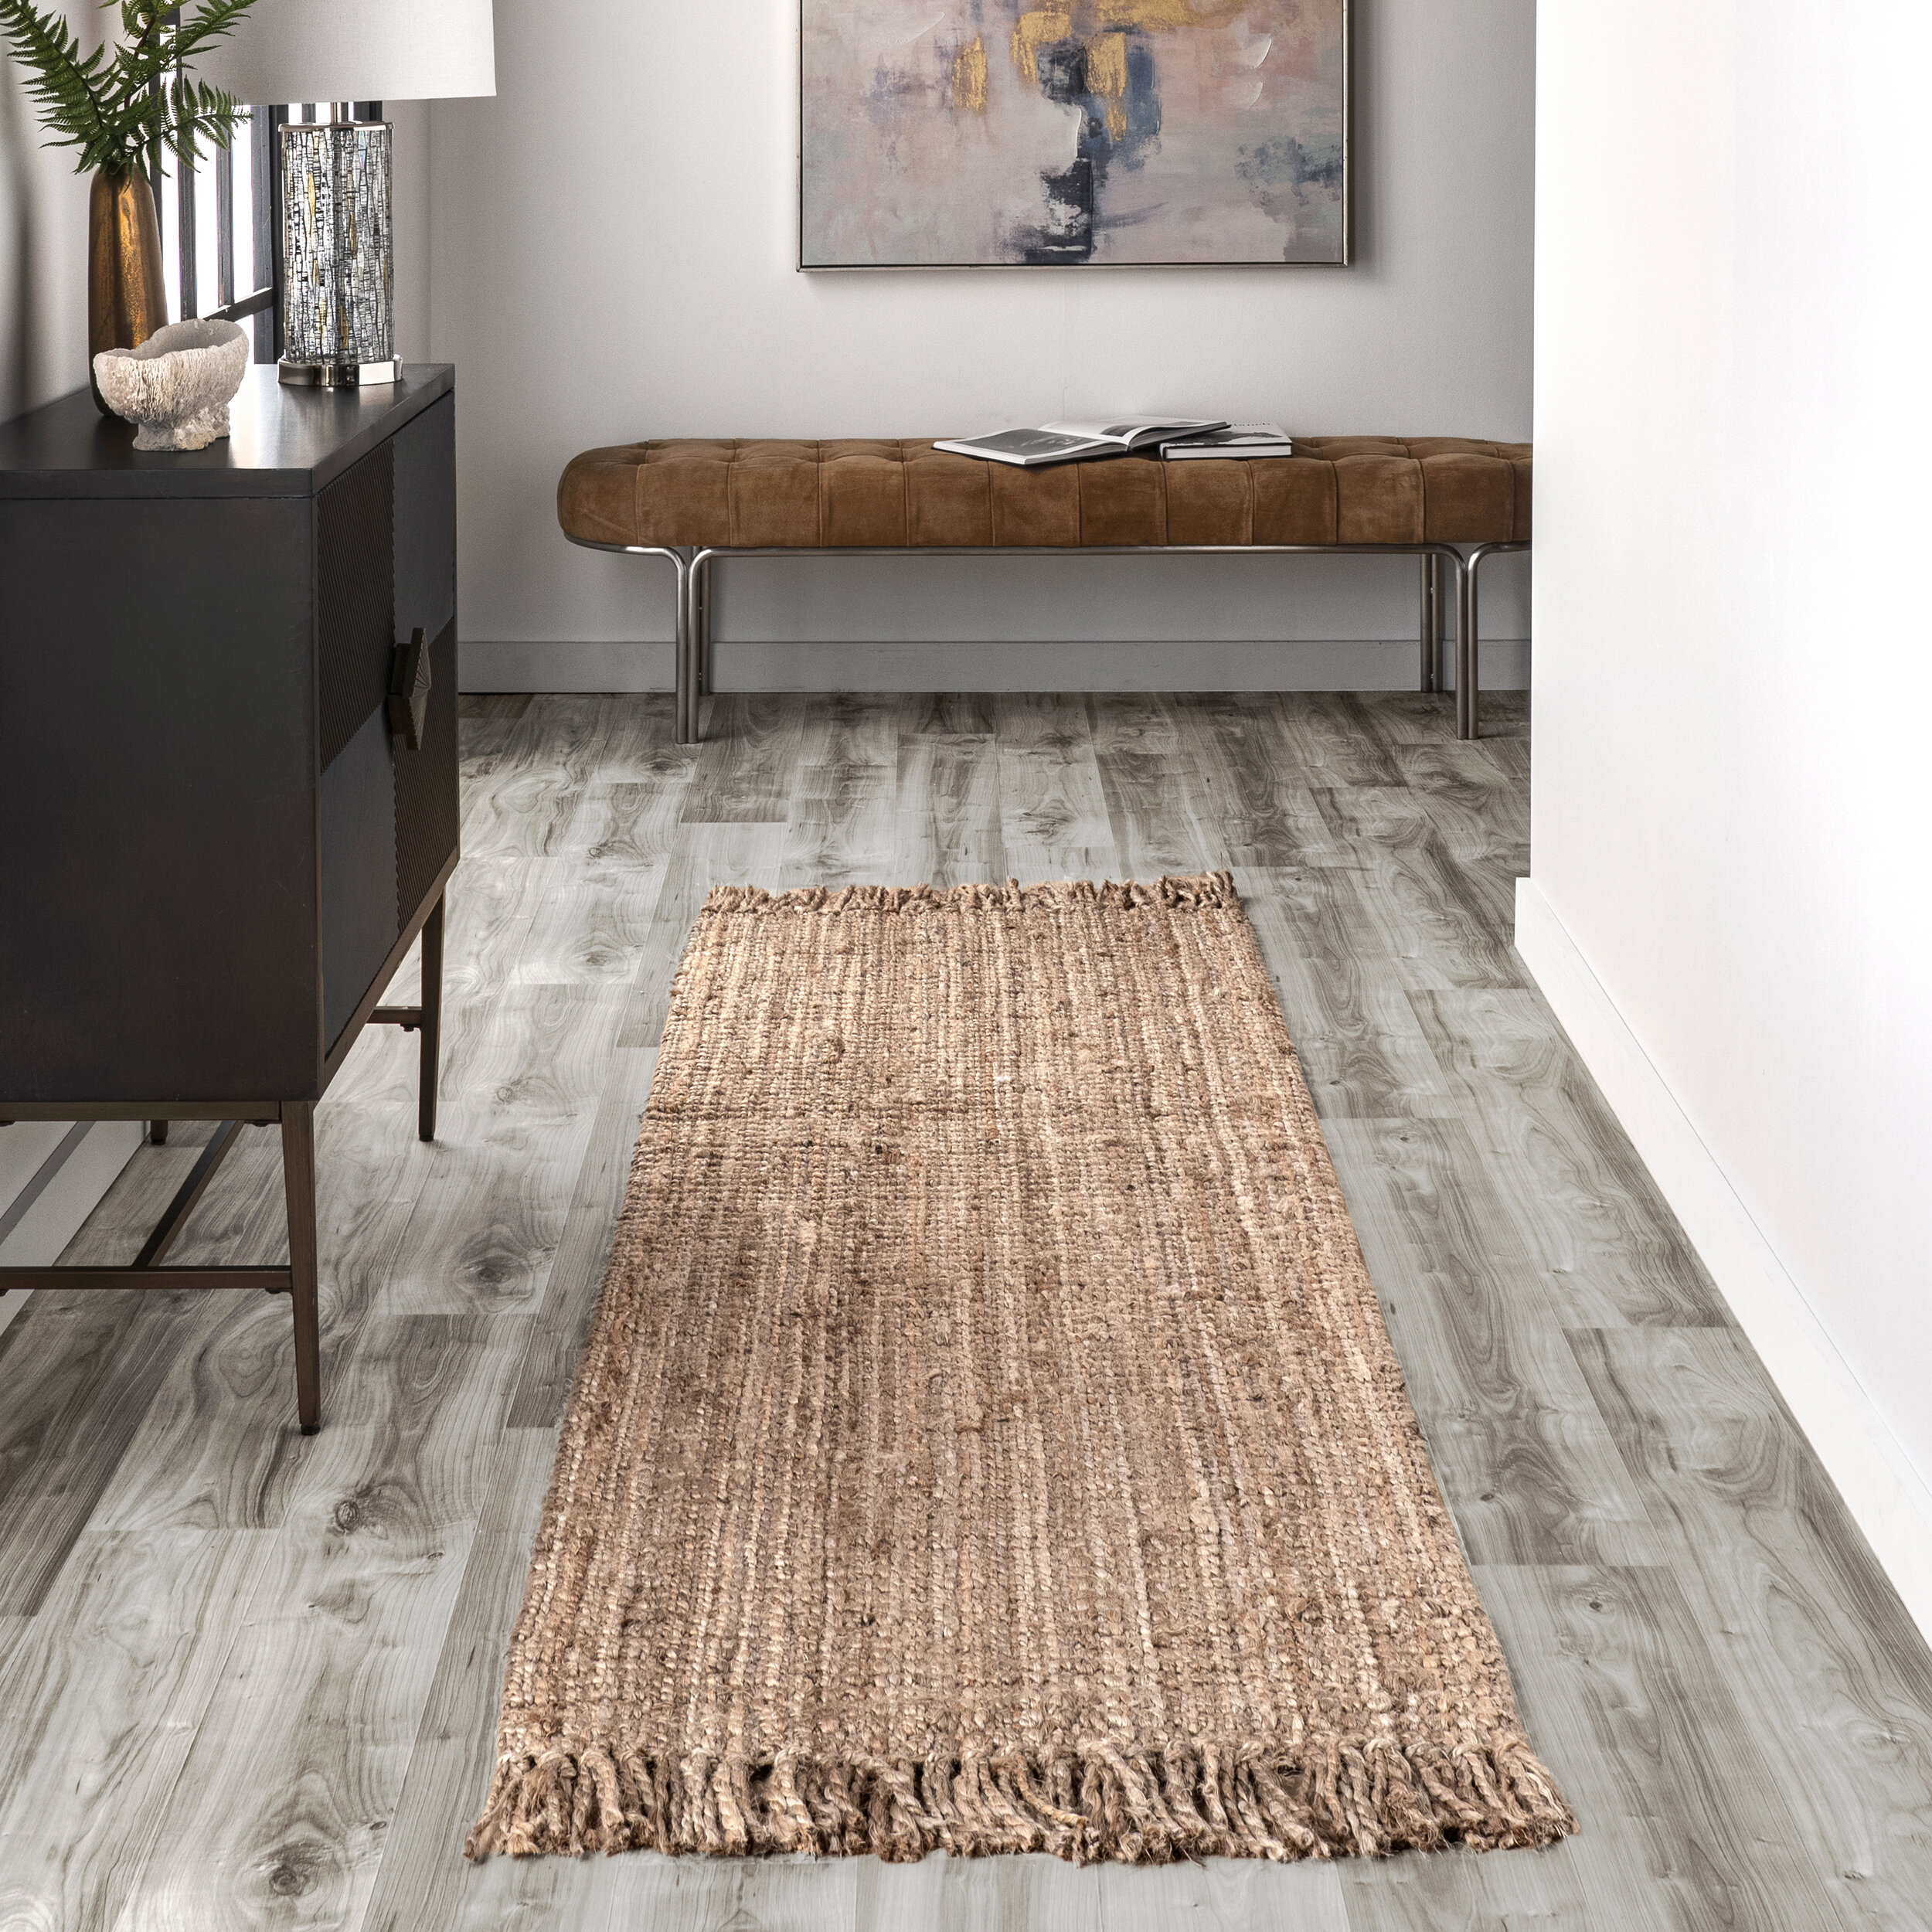 Rustic Handmade Weave Straw Pattern Area Rugs Bedroom Kitchen Floor Mat Doormat